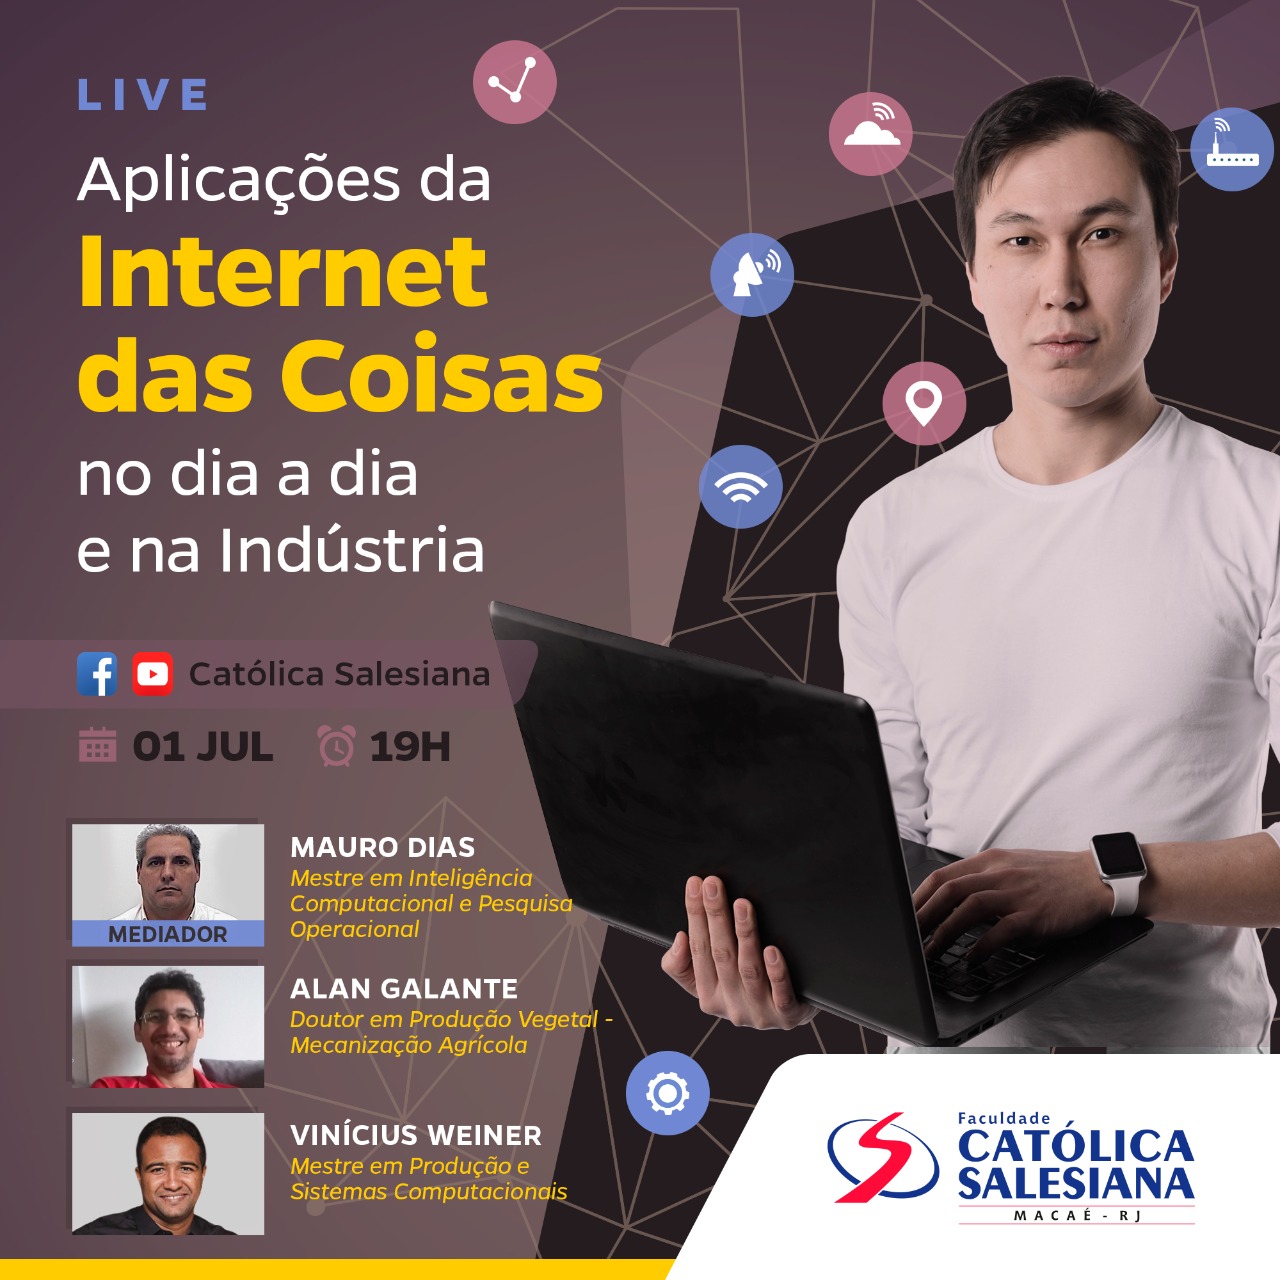 Católica Salesiana: Live sobre “Aplicações da Internet das Coisas” será no dia 01 de julho